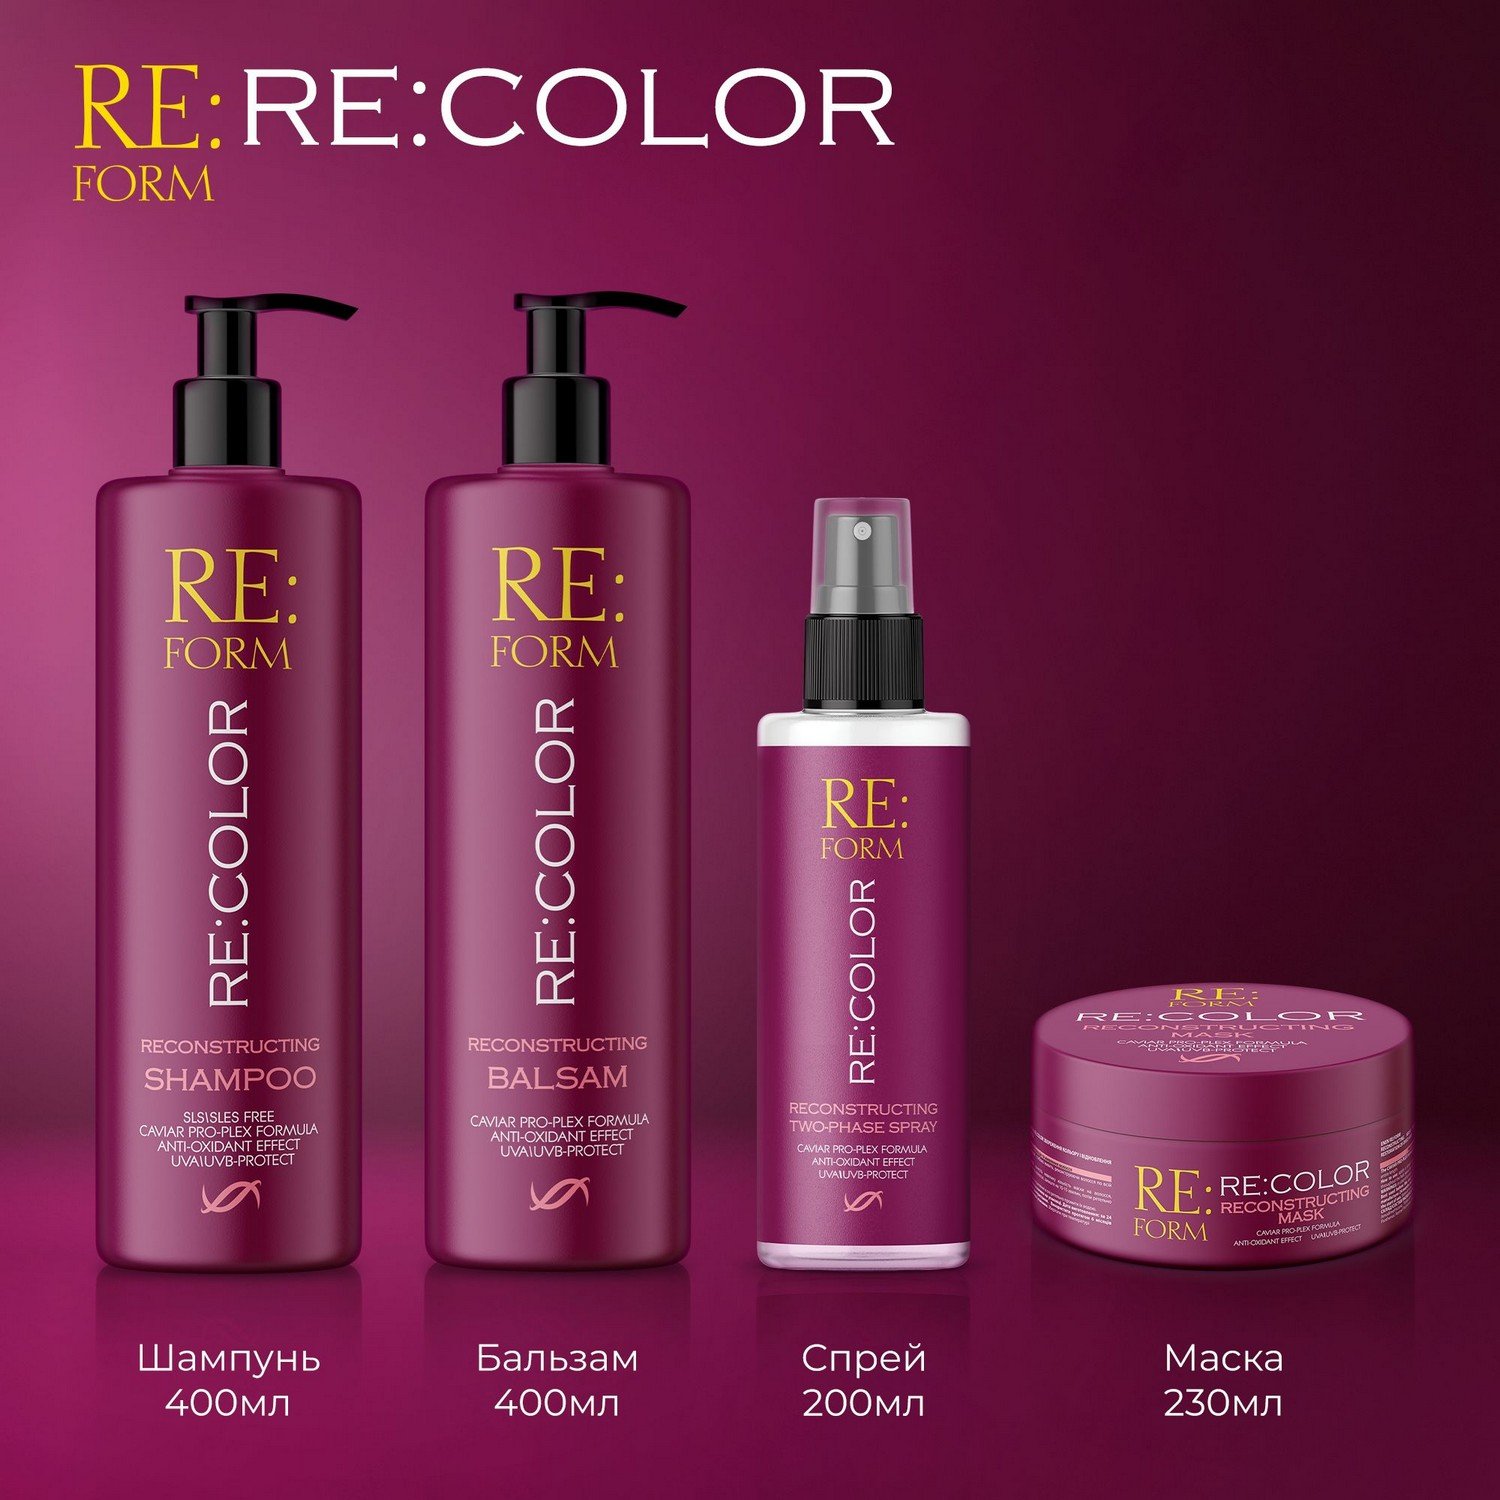 Реконструюючий двофазний спрей Re:form Re:color Збереження кольору та відновлення фарбованого волосся, 200 мл - фото 9